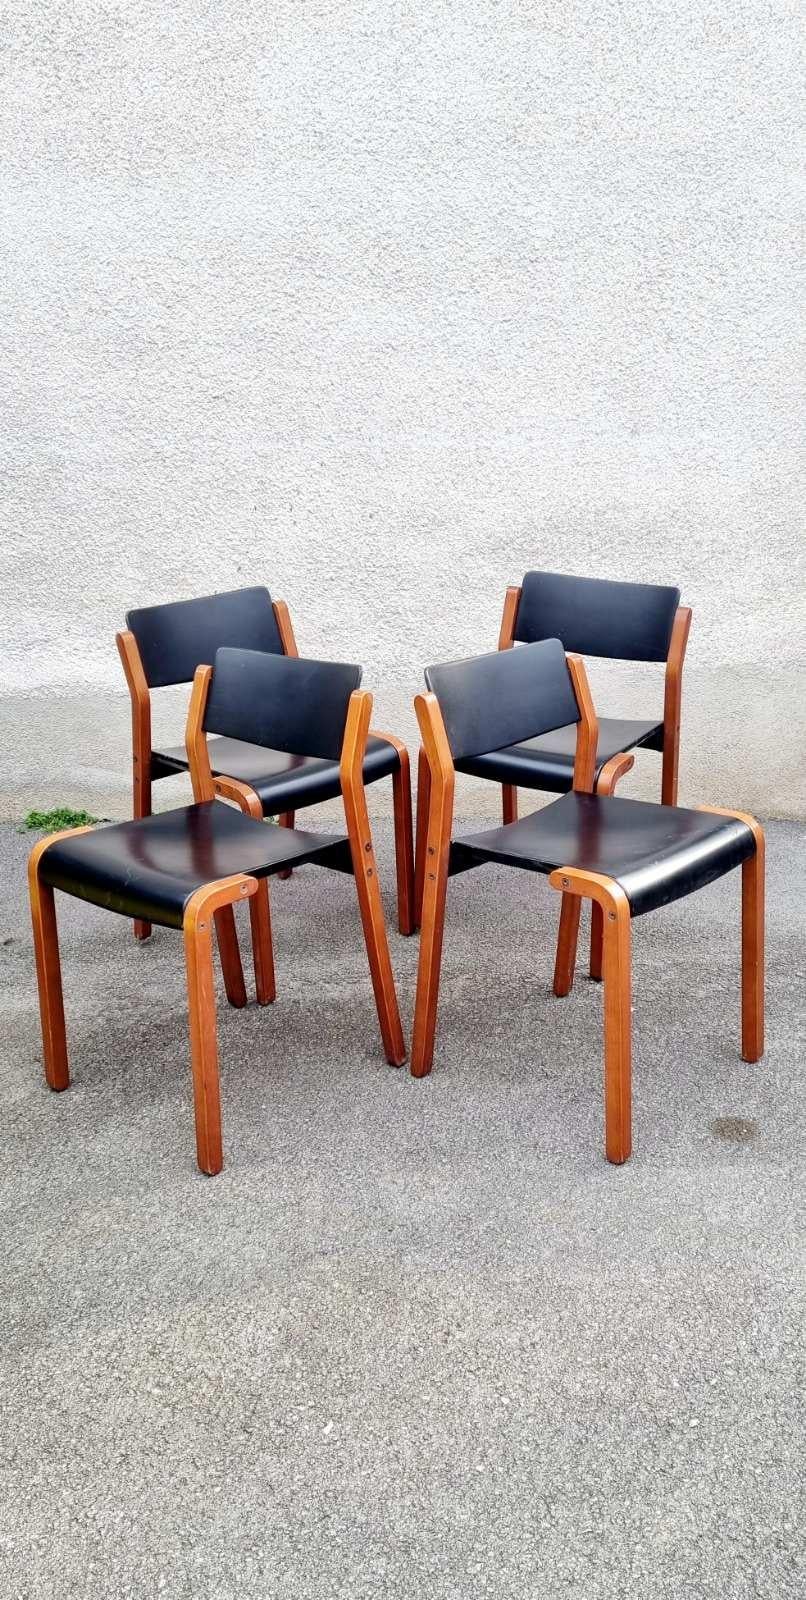 Rare ensemble de 4 chaises modernes italiennes de modèle Gruppo conçues par De Pas, D'Urbino et Lomazzi pour Bellato en 1979.
Chaises mod. Groupe avec structure en bois clair, pieds à section carrée, assise et dossier incurvés en bois noir.
Conçu